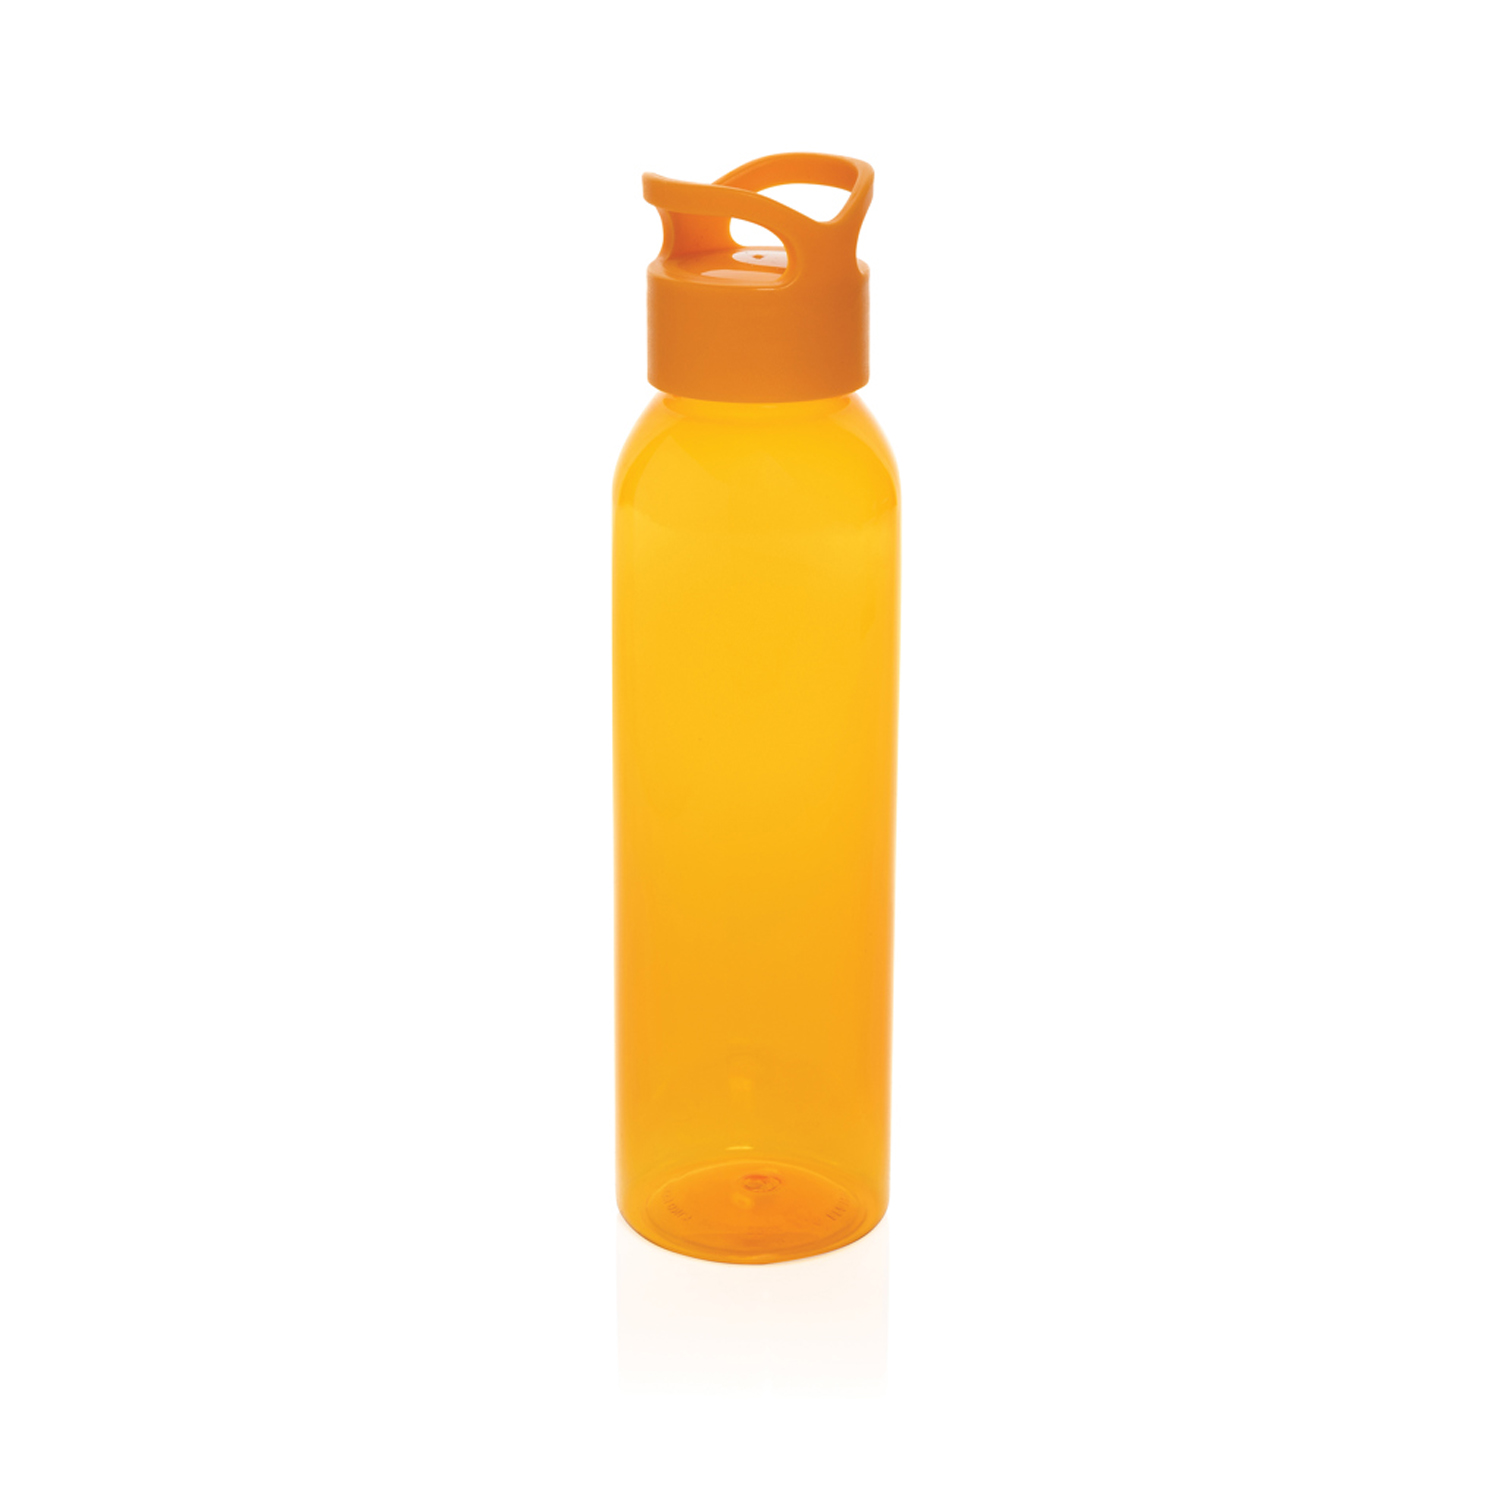 Бутылка для воды Oasis из rPET RCS